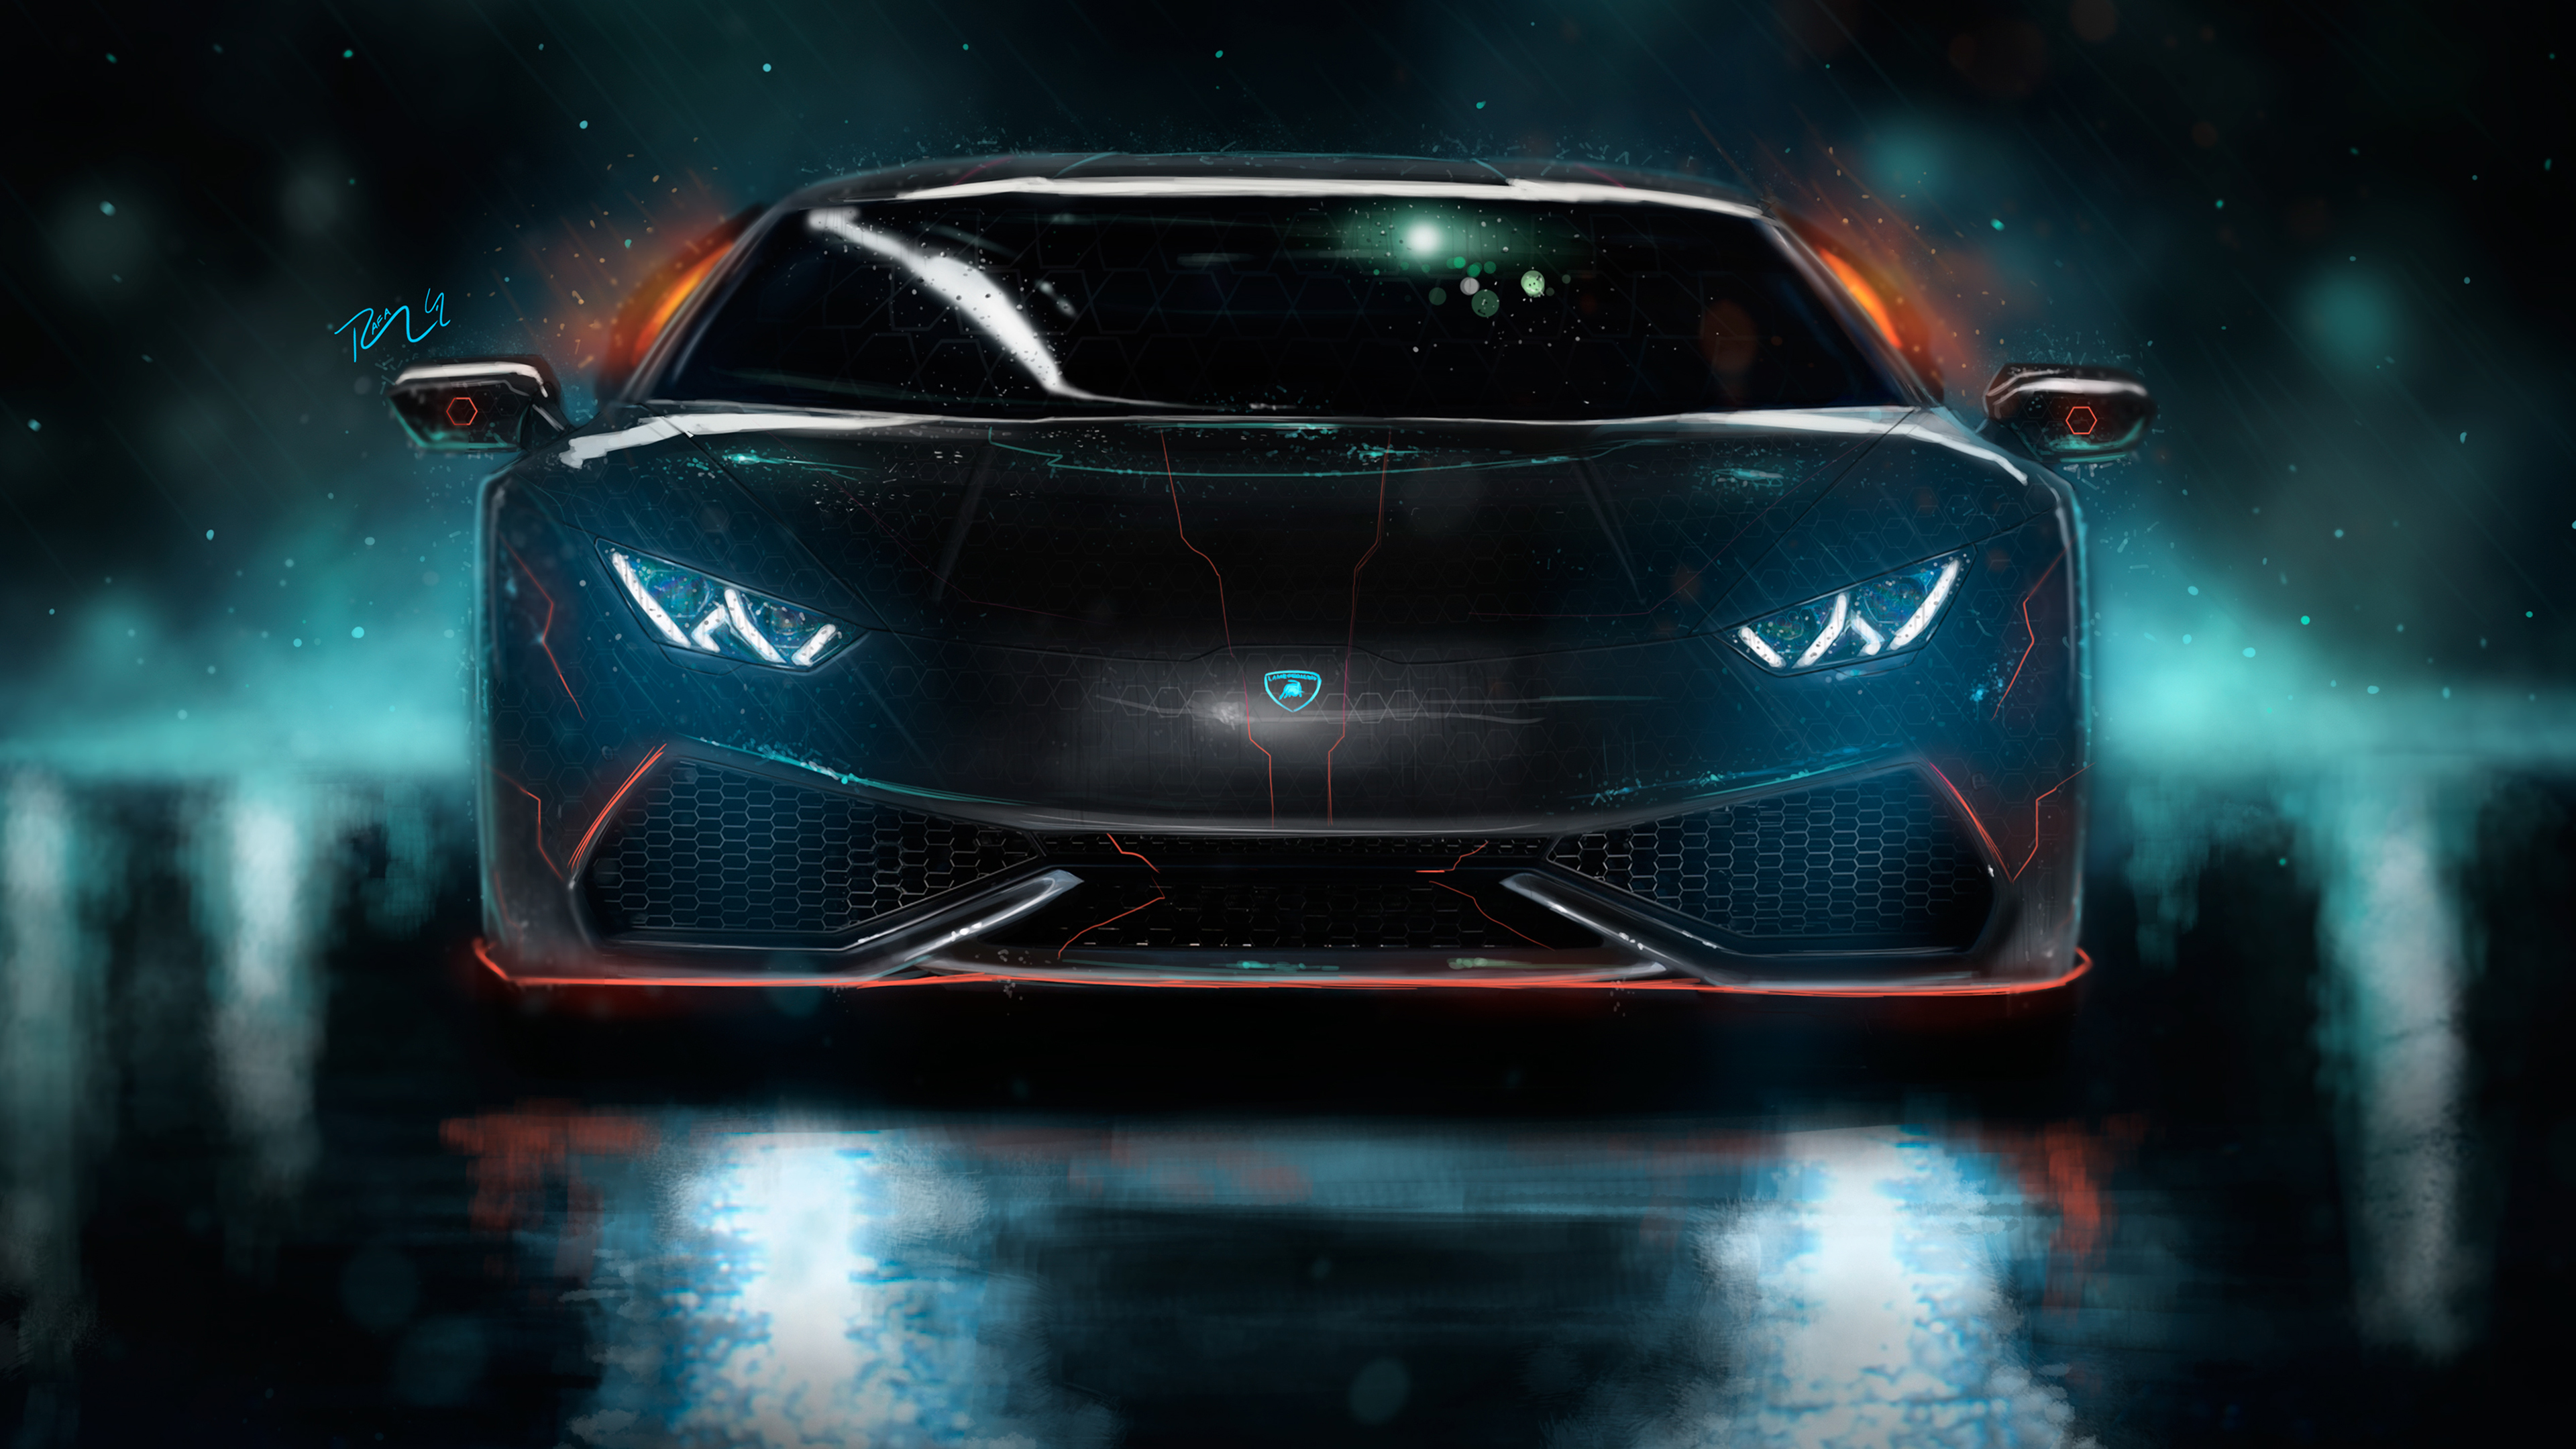 Lamborghini Huracan CGI 4K Wallpapers | HD Wallpapers